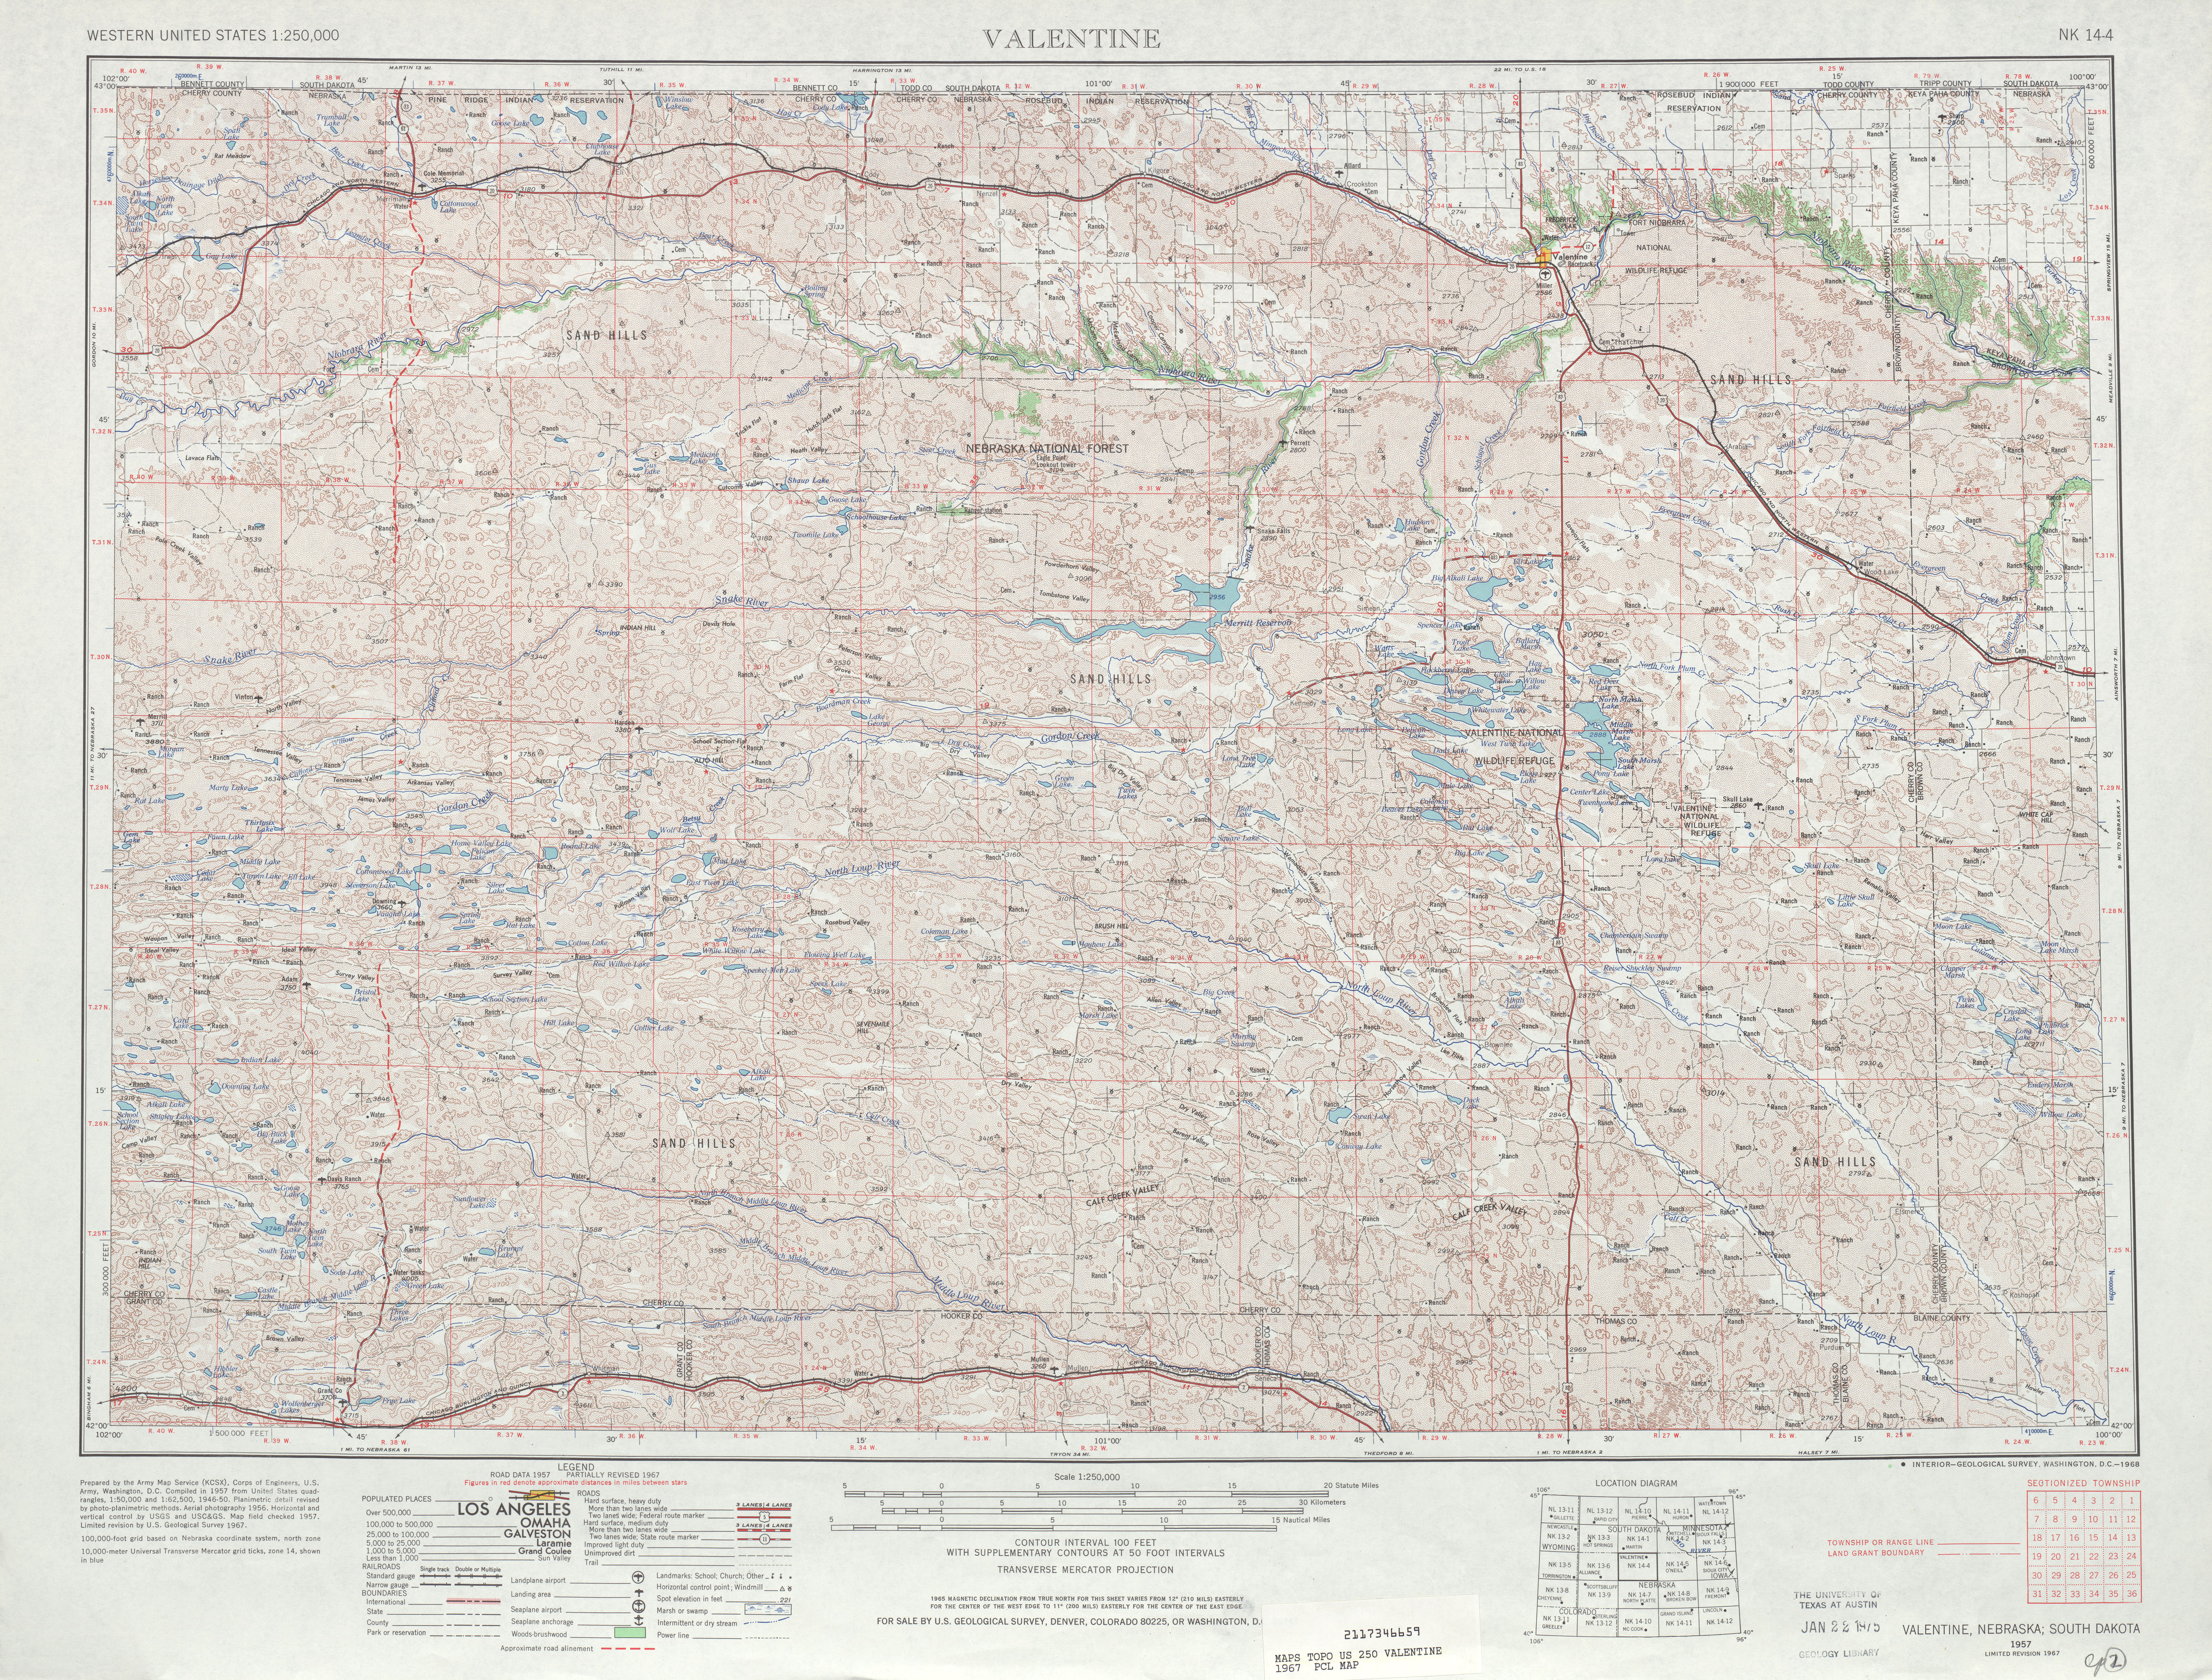 Hoja Valentine del Mapa Topográfico de los Estados Unidos 1967